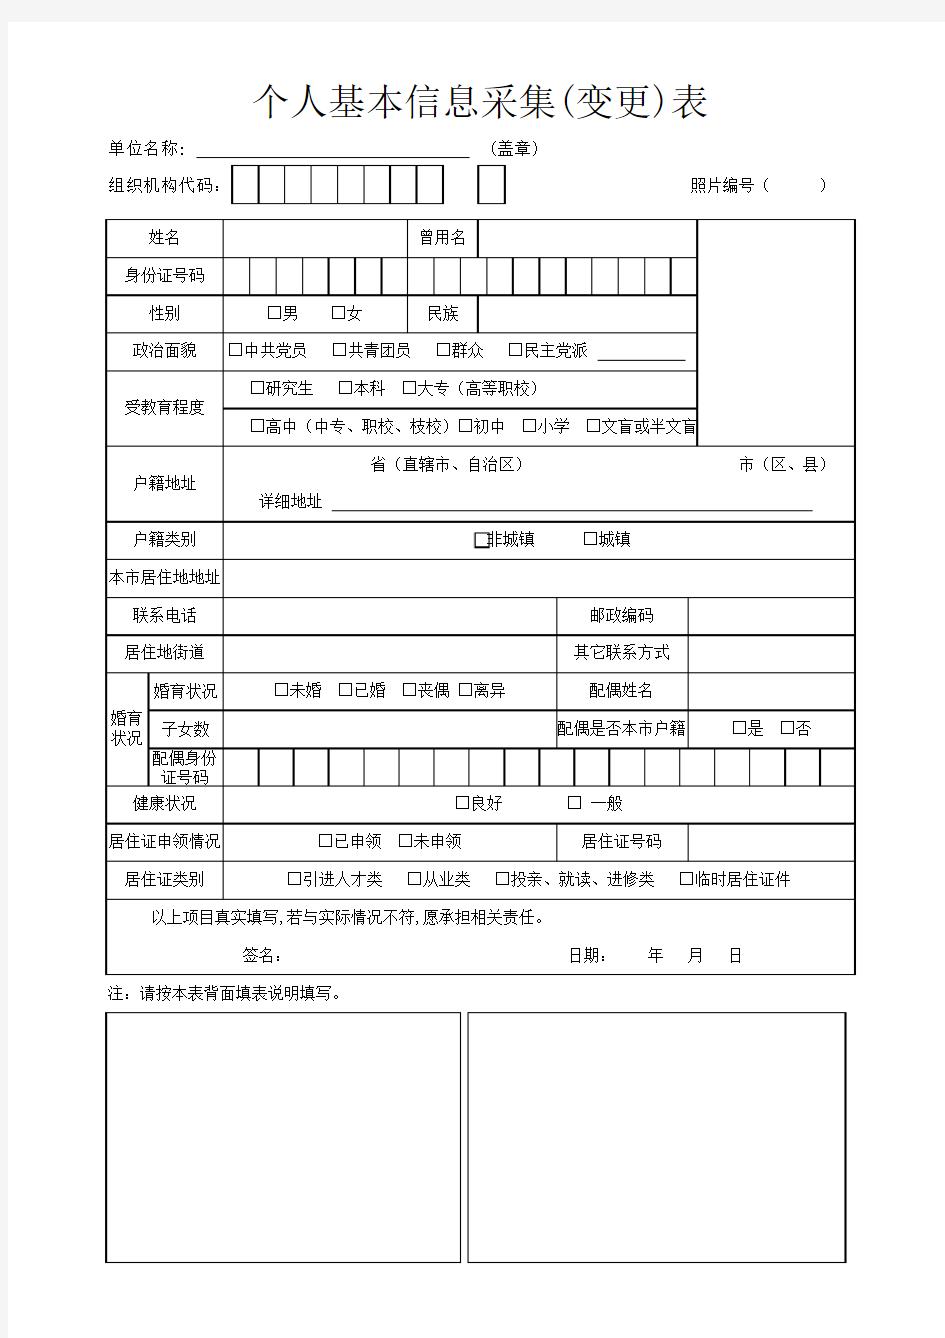 上海市个人基本信息采集(变更)表